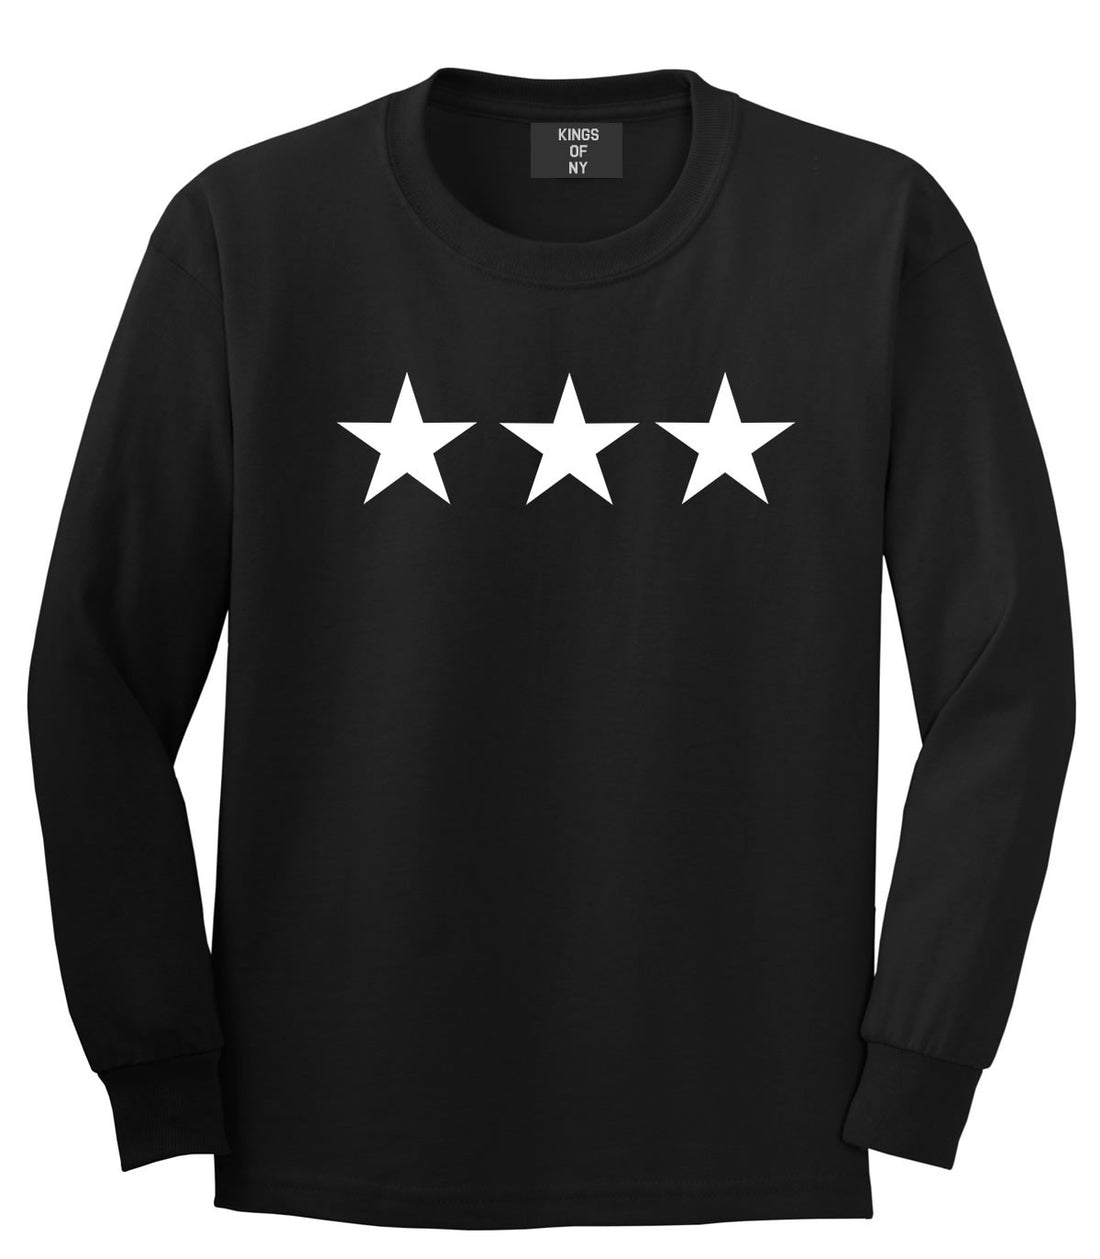 Kings Of NY Three Stars Long Sleeve T-Shirt in Black